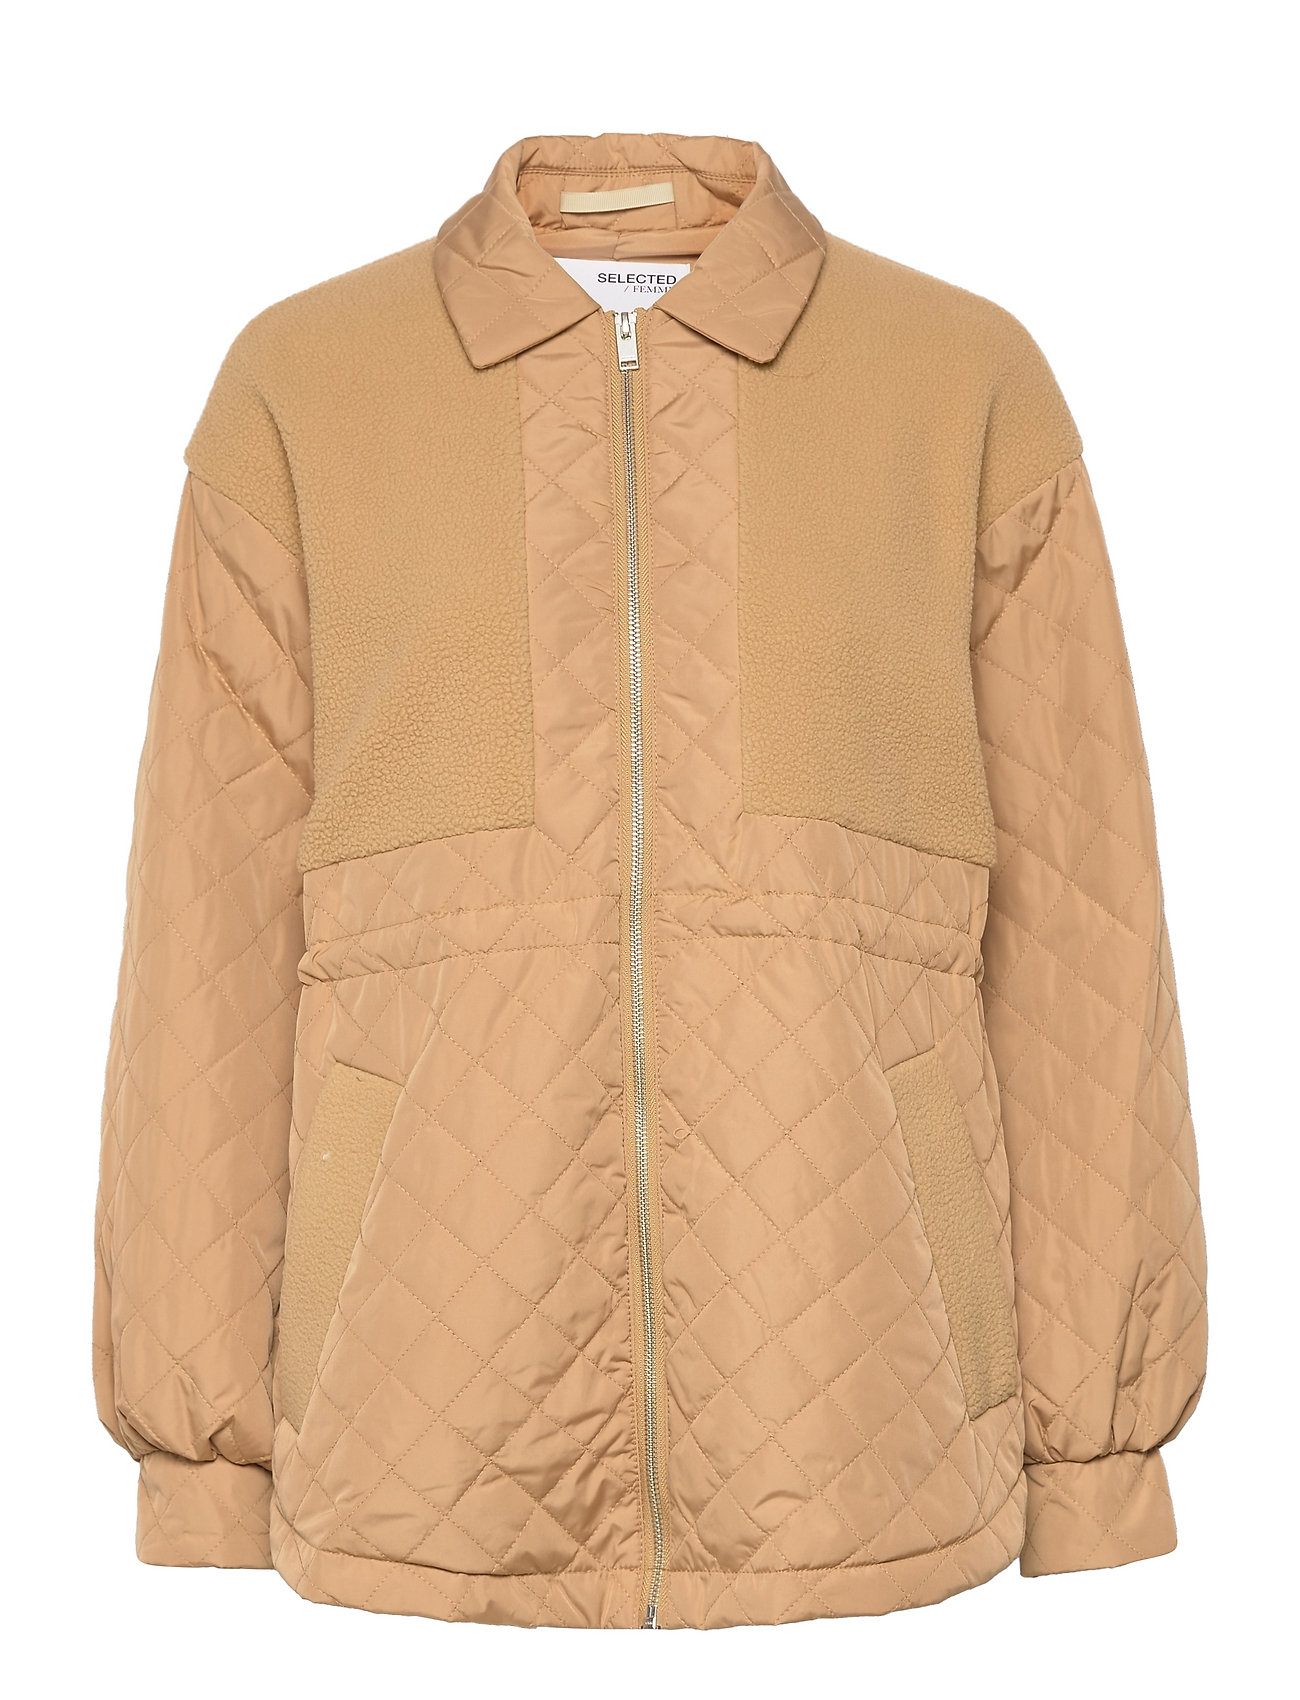 Selected Femme Quilted Teddy Jacket W - 188 kr. Køb Quiltede jakker fra Selected Femme online Boozt.com. Hurtig levering & nem retur